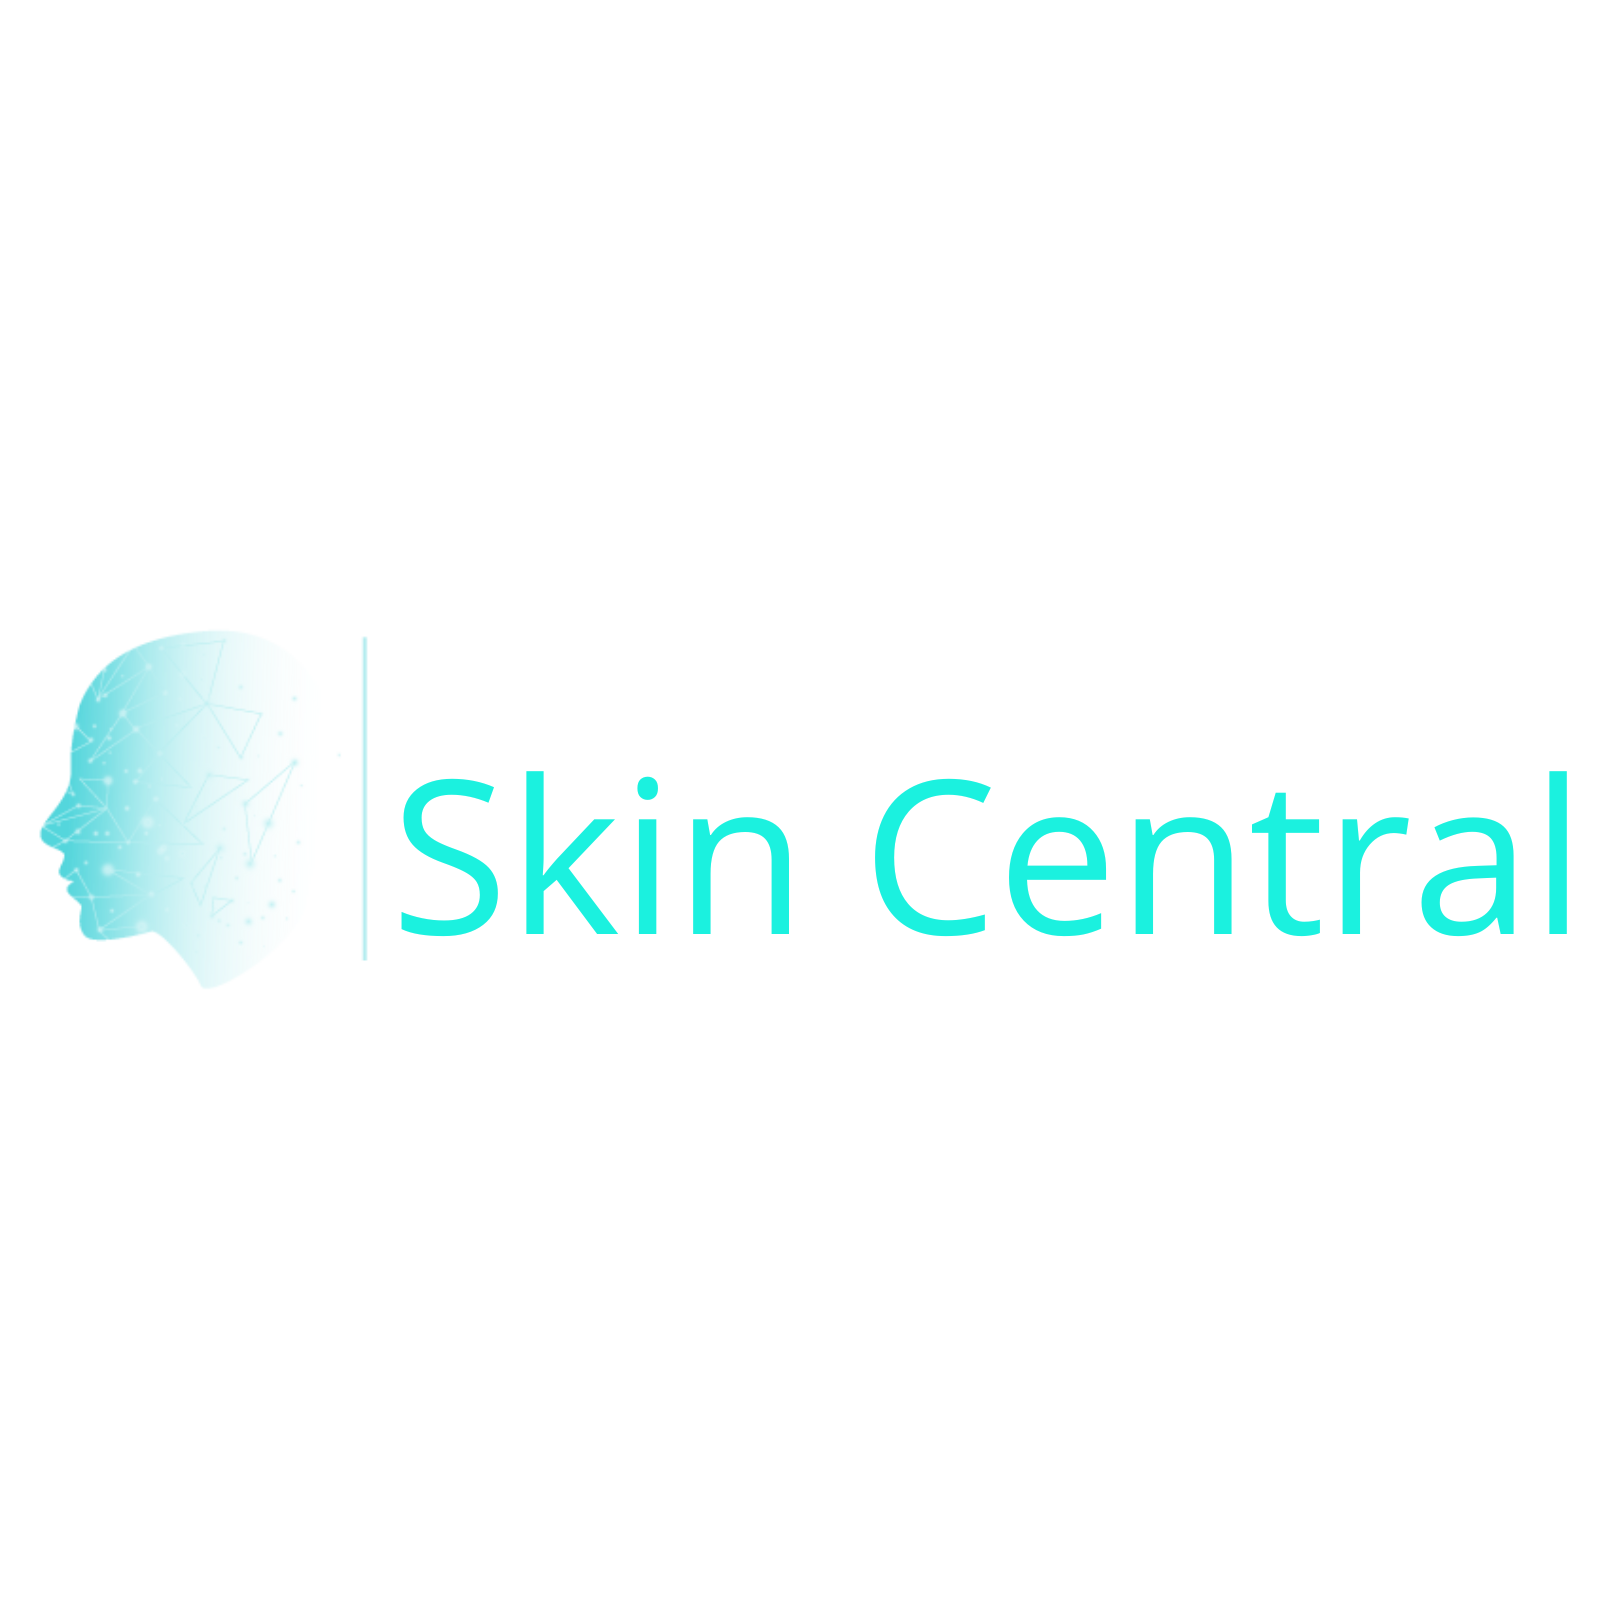 Dr.Madhavi's Skin Central